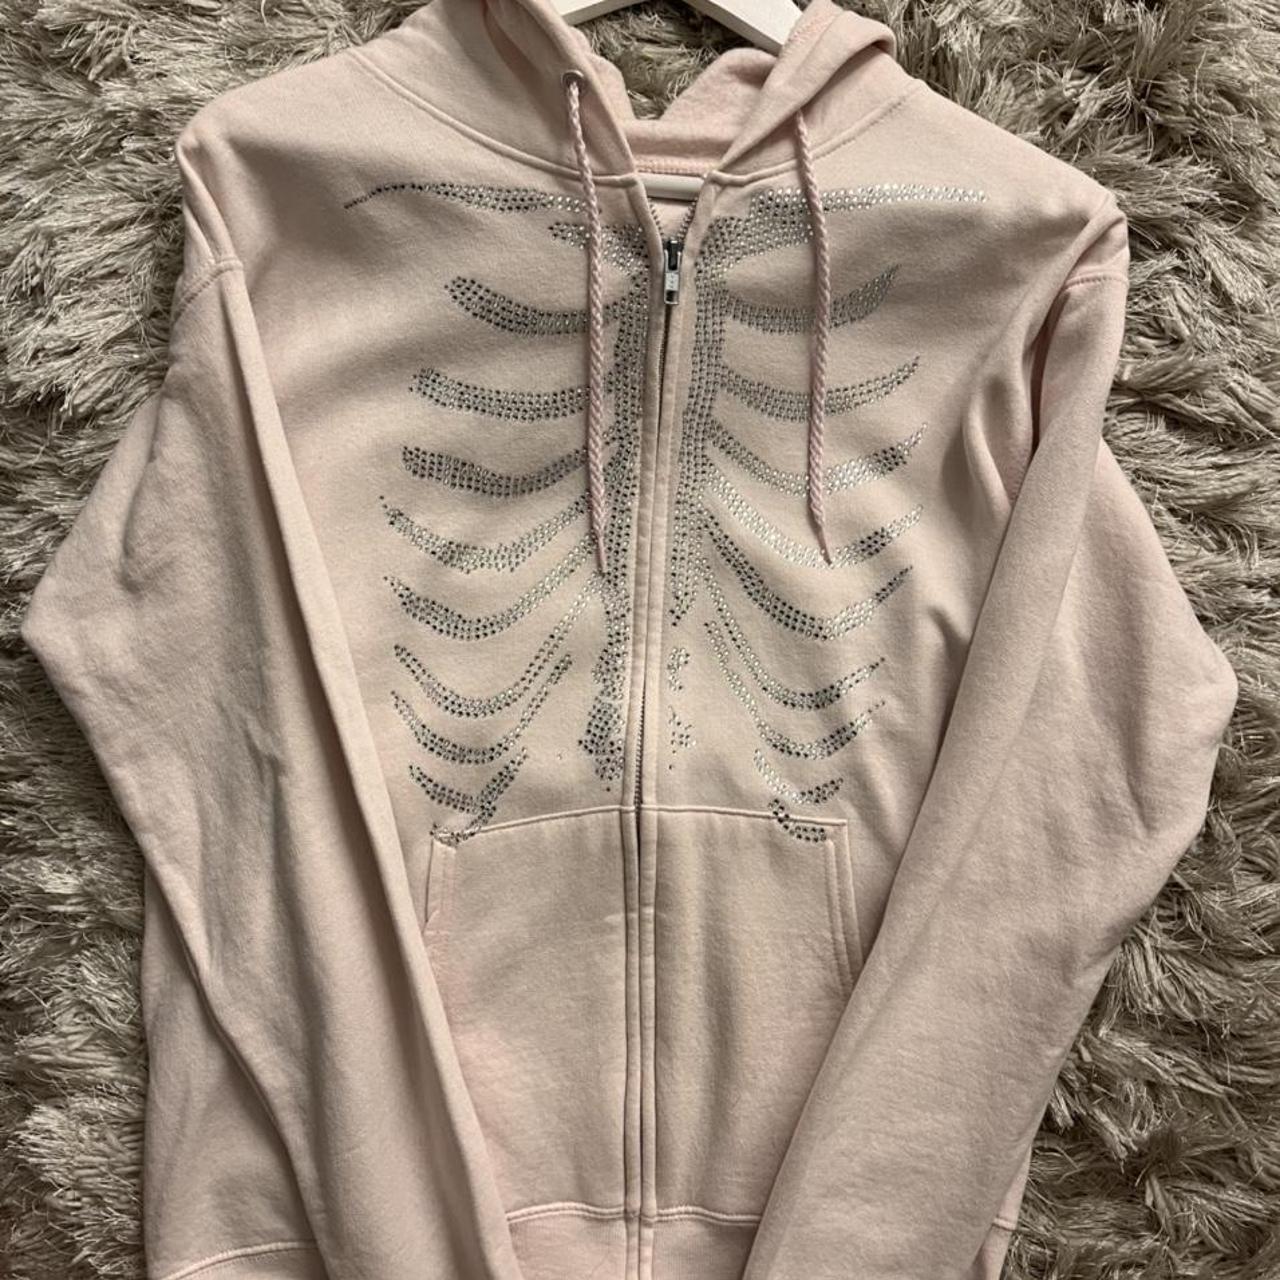 Product Image 3 - Pink Skeleton Zip Up Hoodie